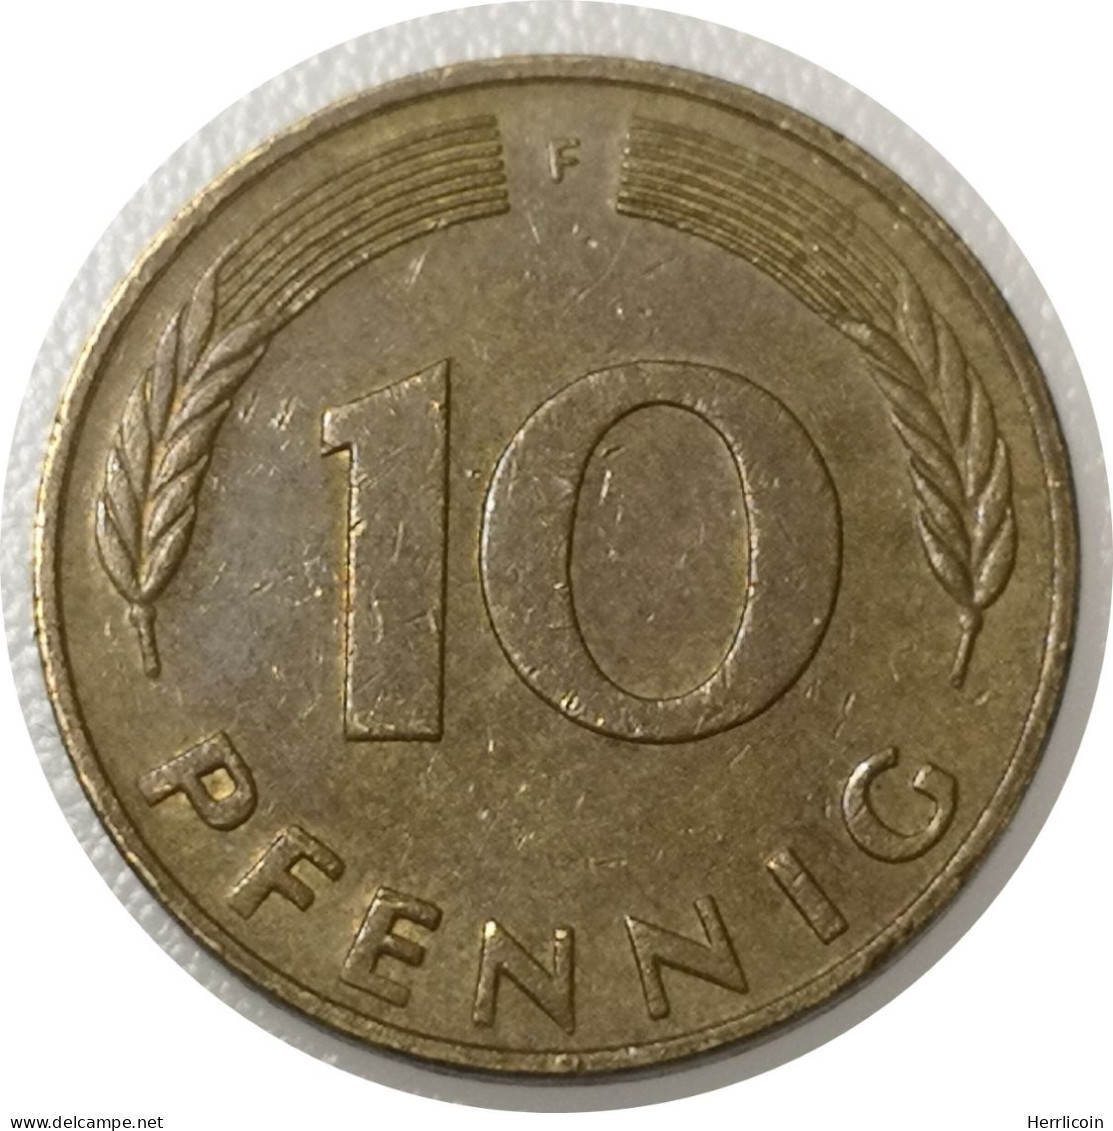 Monnaie Allemagne - 1989 F - 10 Pfennig - 10 Pfennig